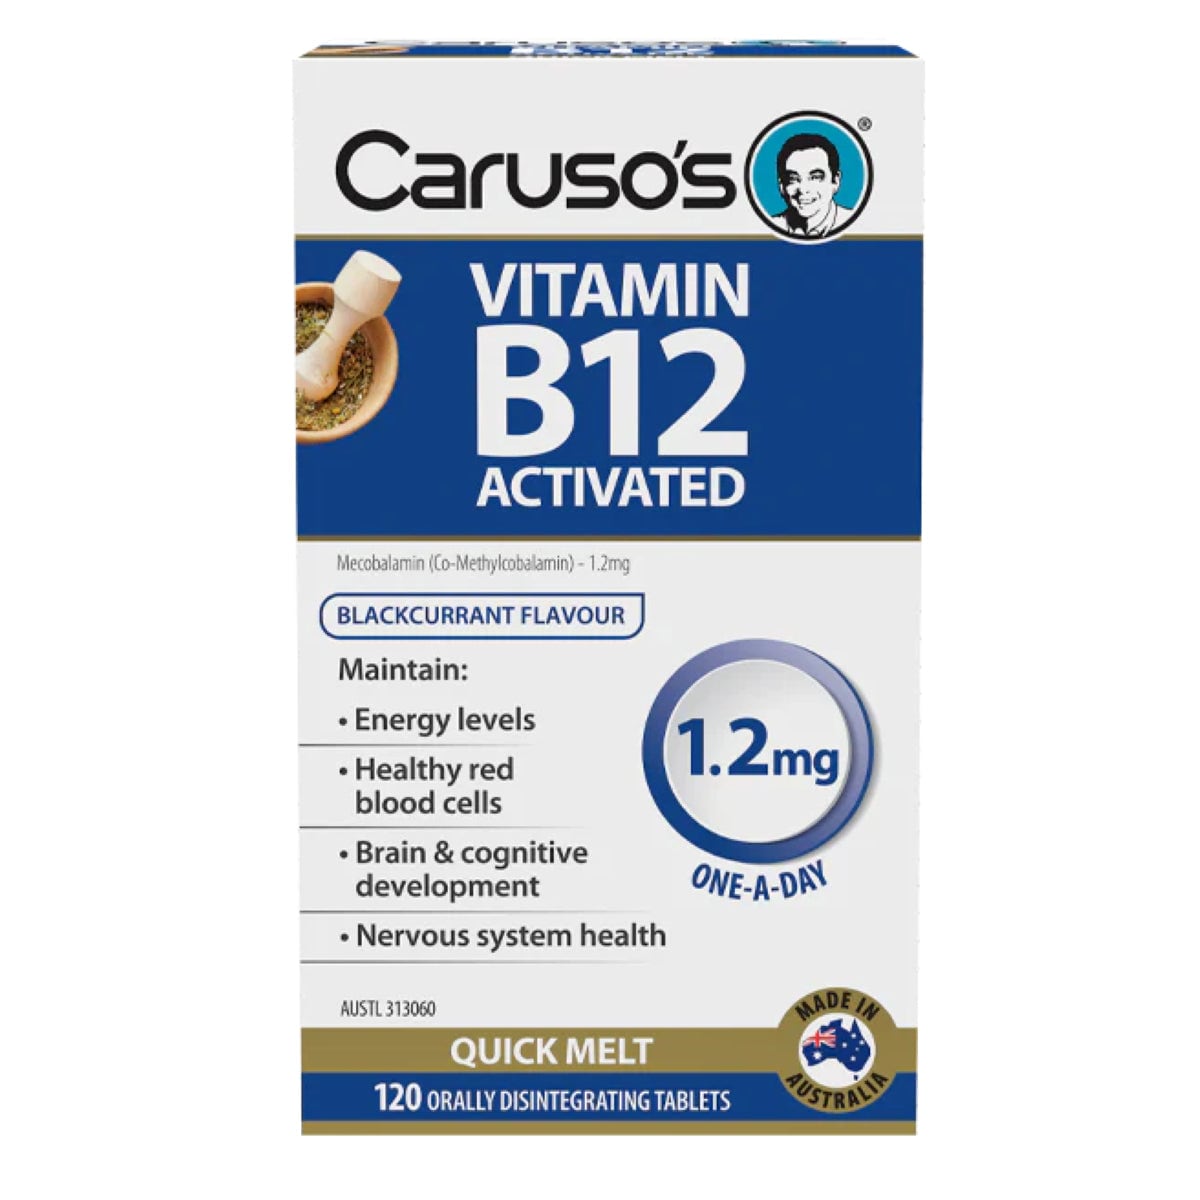 Carusos Vitamin B12 Activated Quick Melt 120 Tablets Australia